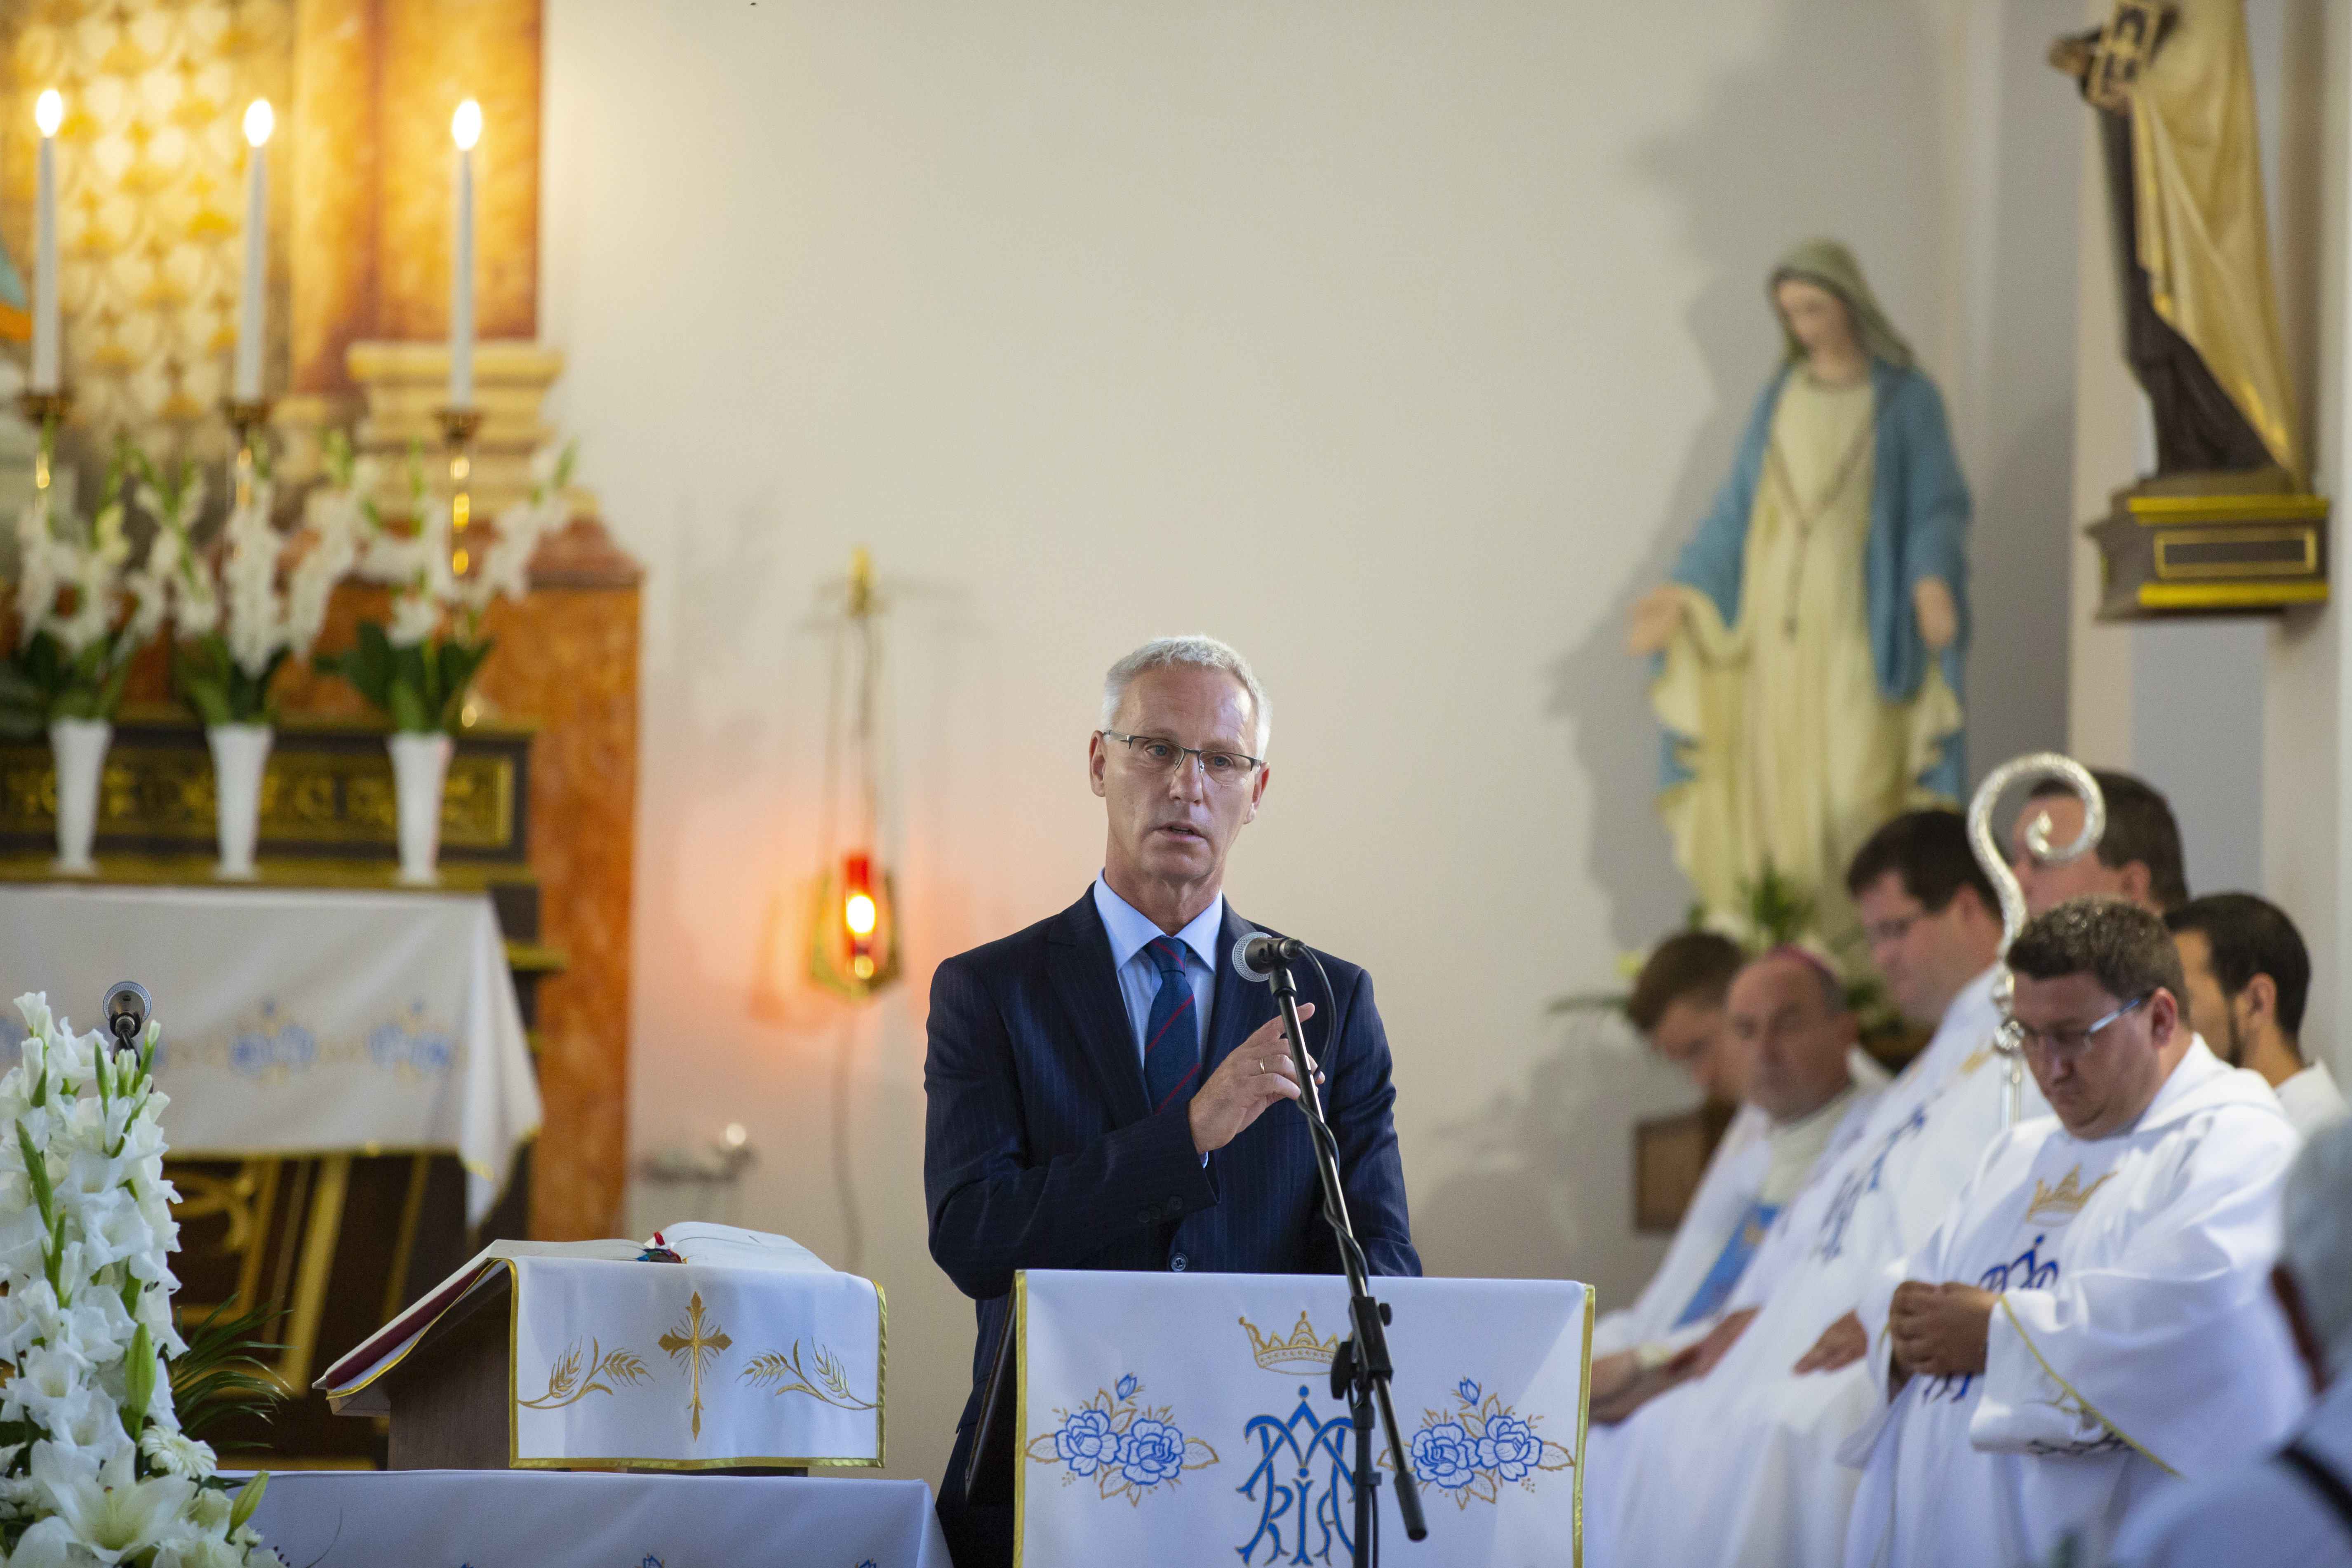 Soltész Miklós beszédet mond a kormányzati támogatással felújított katolikus plébániatemplom felszentelési ünnepségén a Zala megyei Pölöskén 2020. augusztus 22-én.